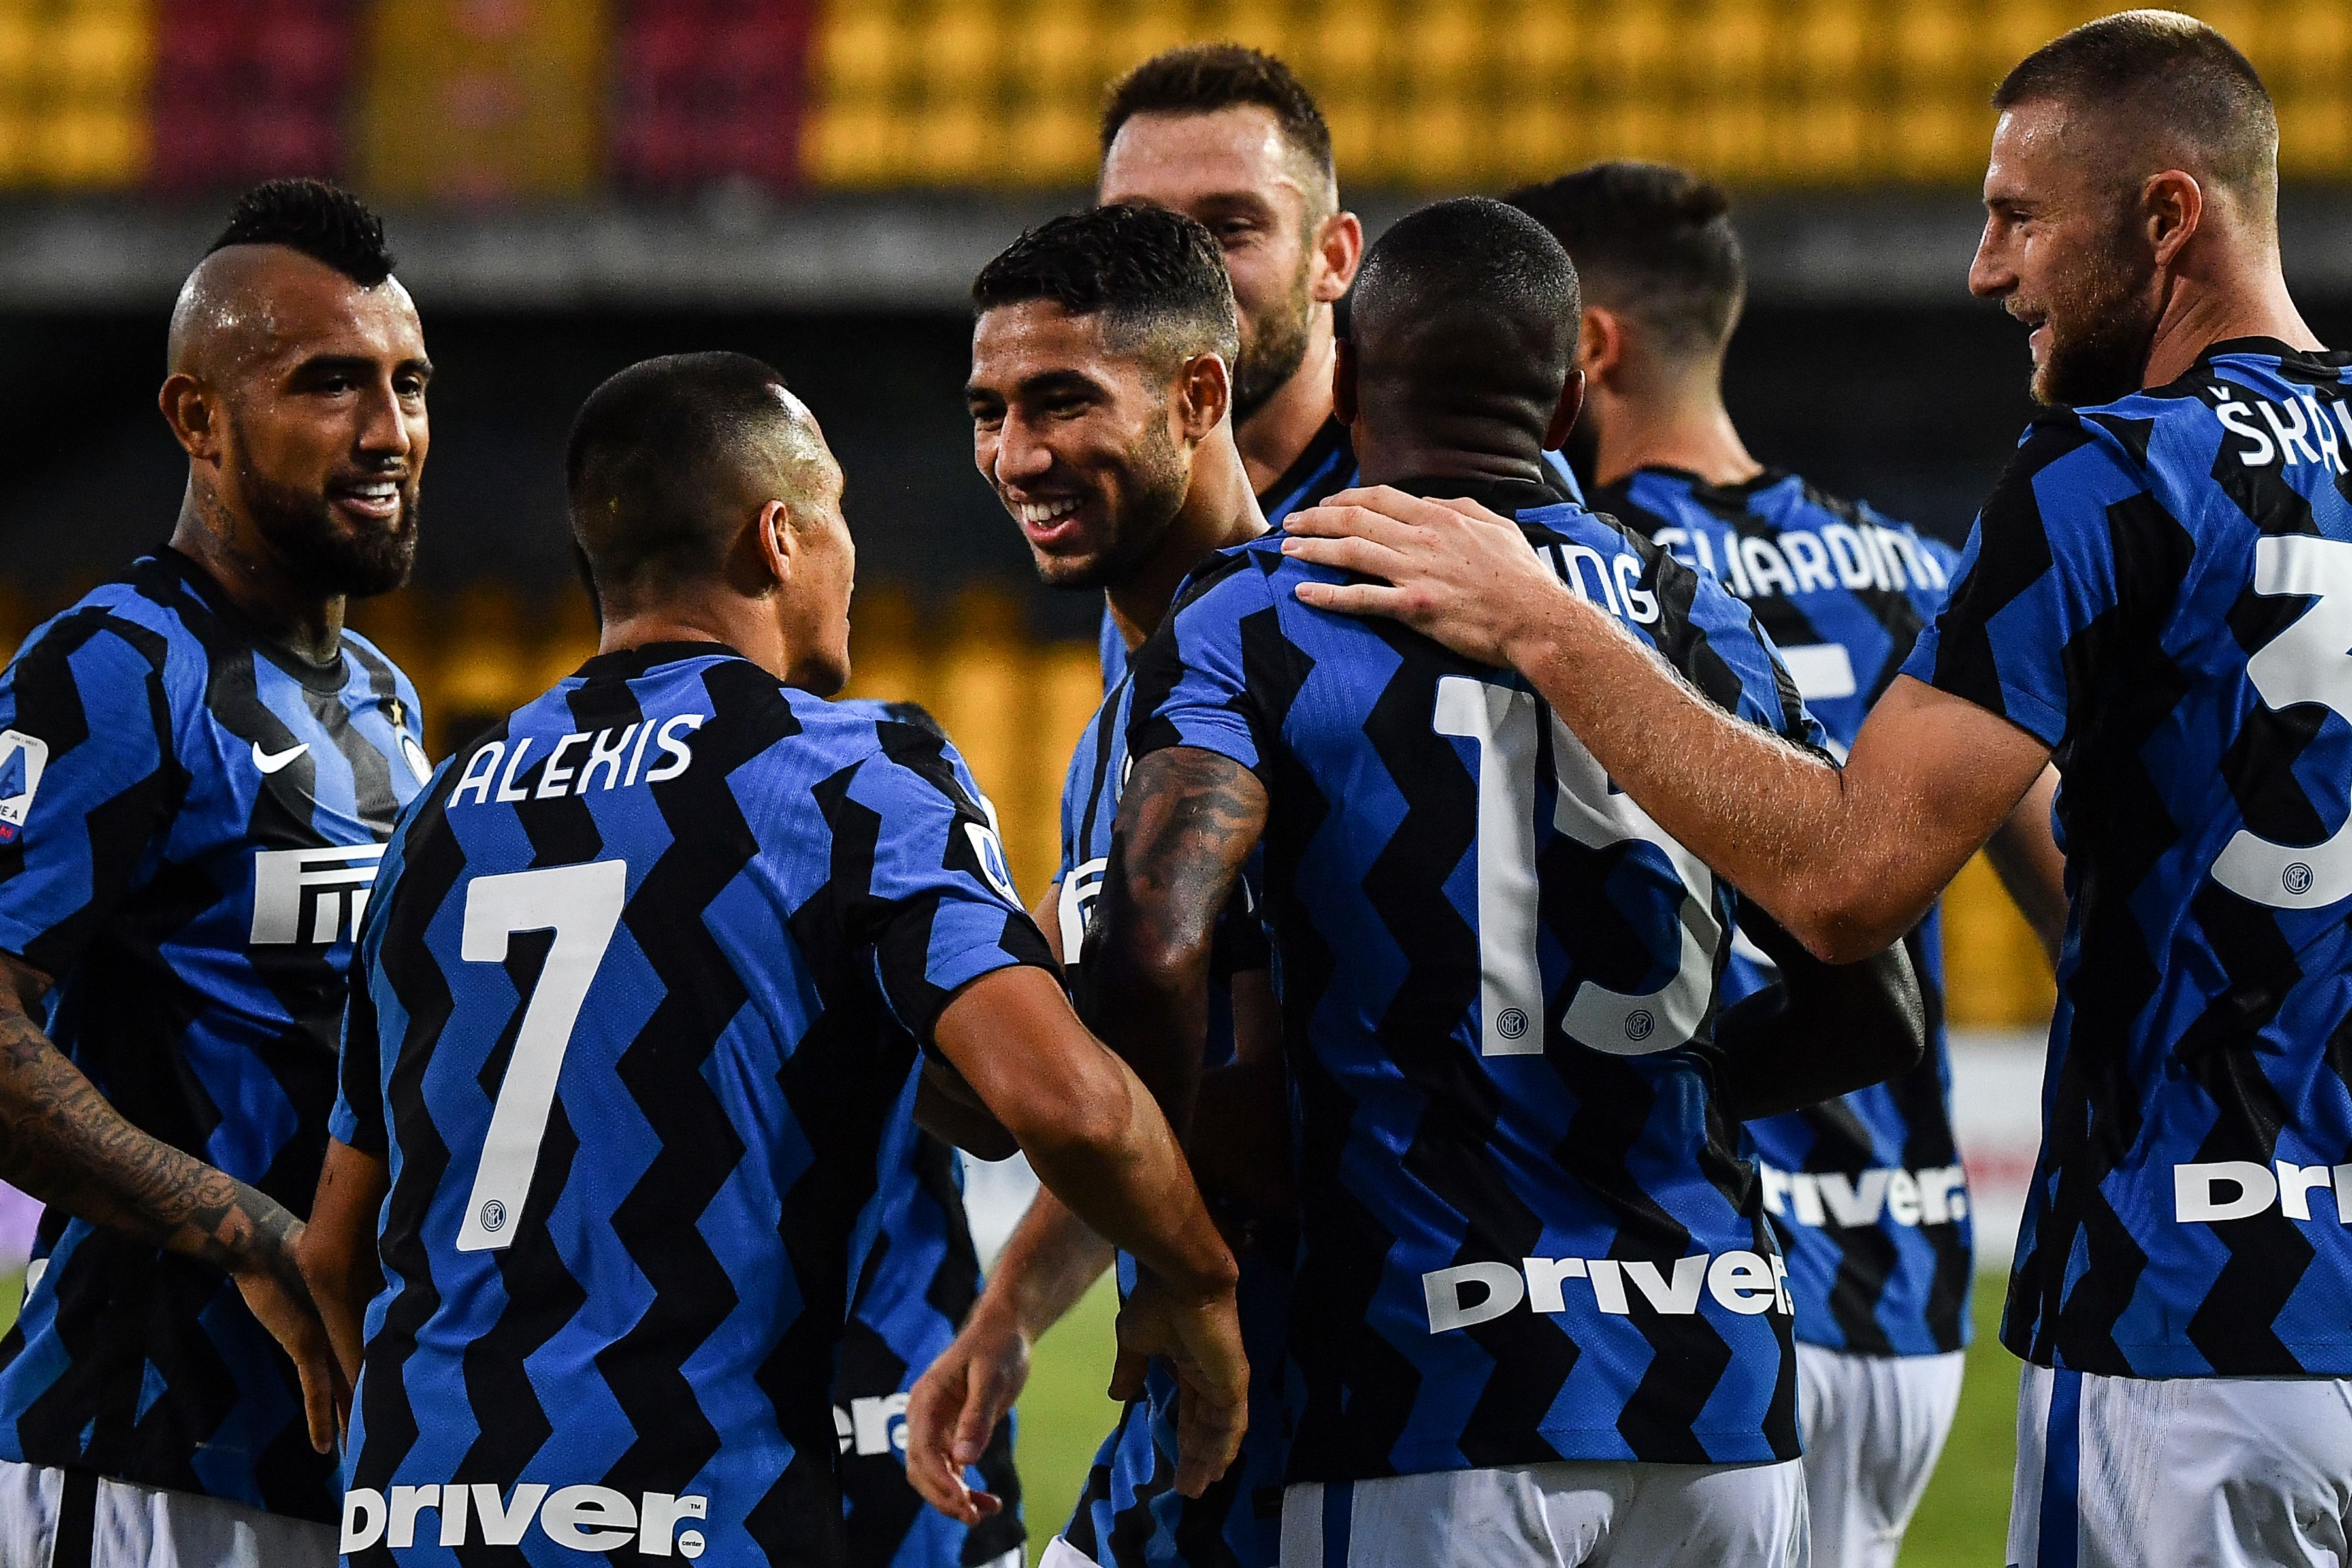 Fbl Ita Seriea Benevento Inter